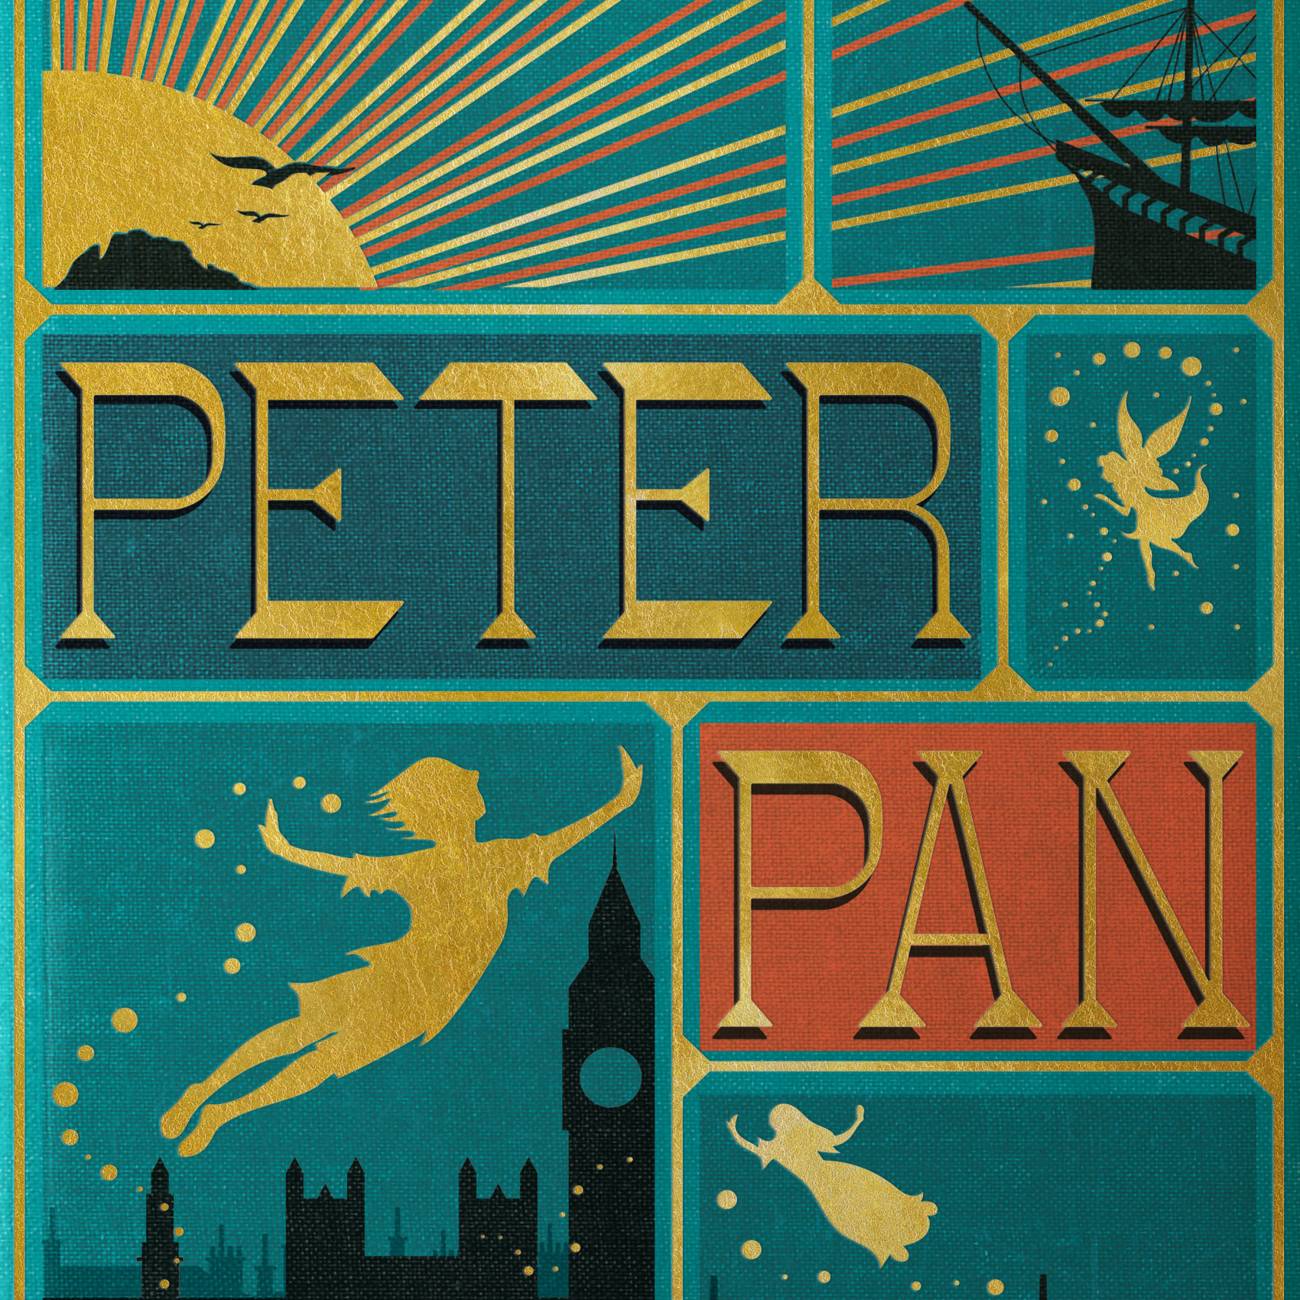 Peter Pan - MinaLima